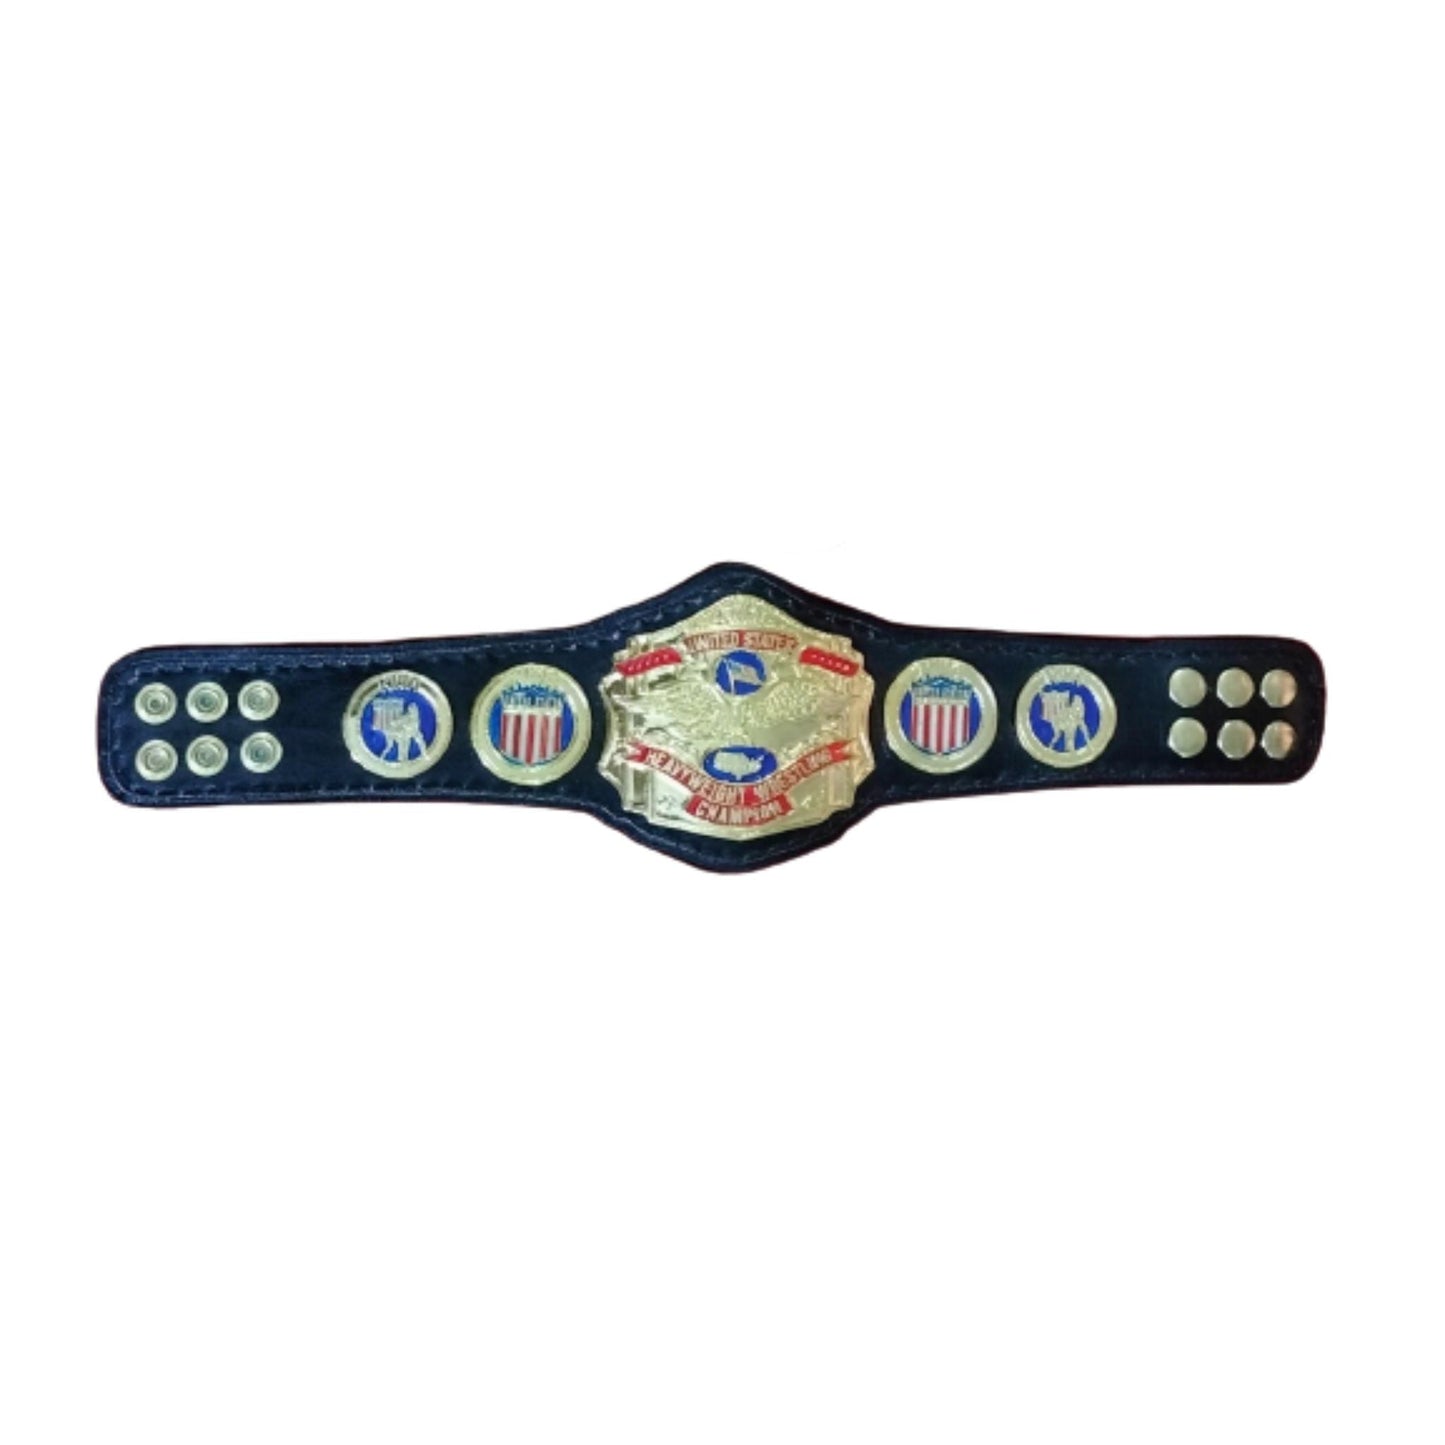 NWA United States USA Wrestling Championship Mini Replica Title Belt